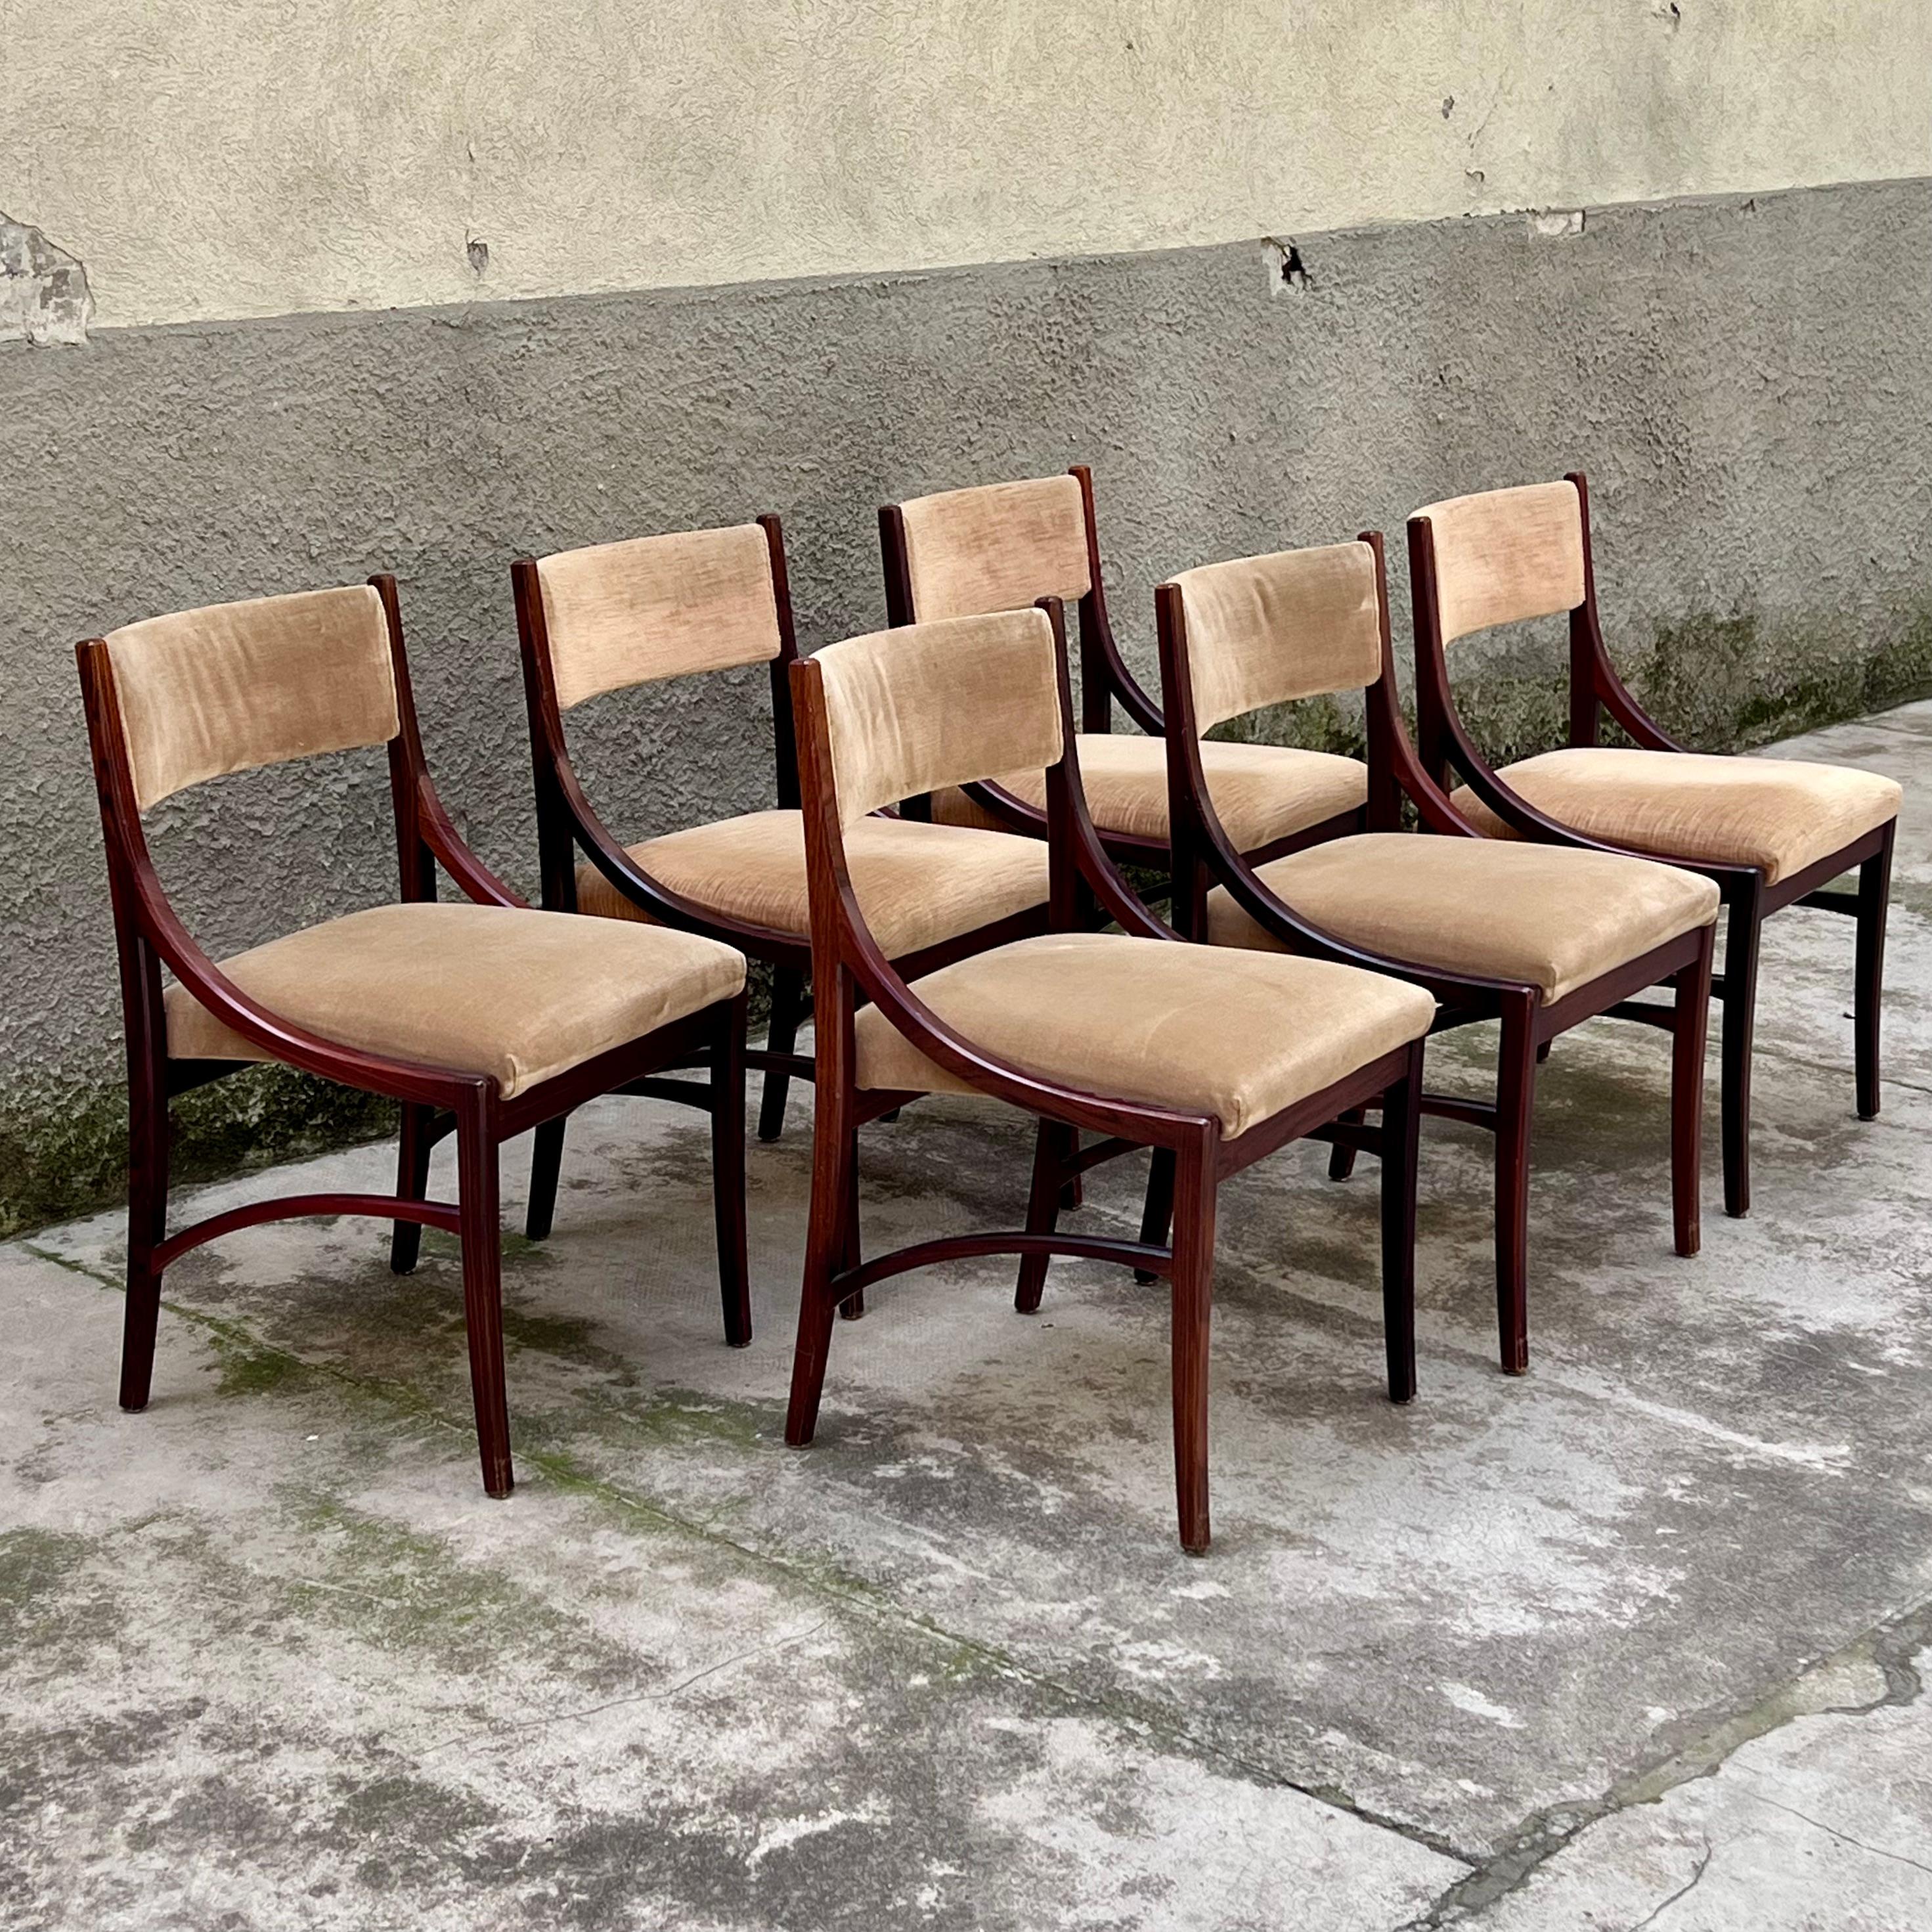 Un magnifique ensemble de six chaises en acajou élégant et en velours couleur noisette confortable, né du crayon d'Ico Parisi et fabriqué depuis les années 1960 par la prestigieuse société Cassina, peut-être la plus connue en termes de